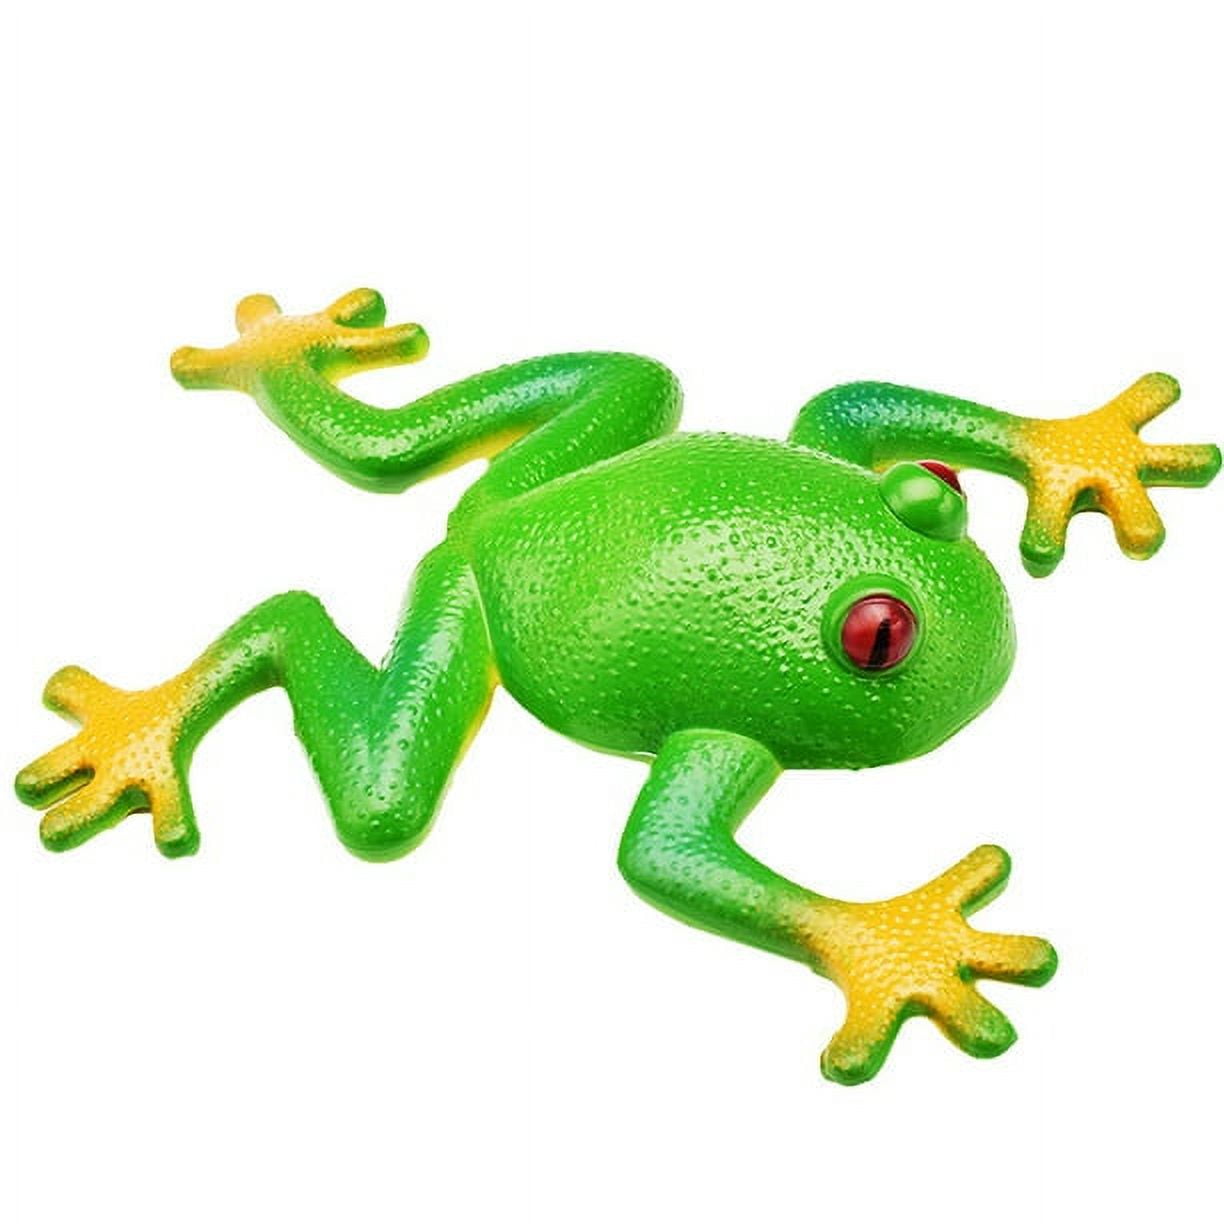 Sticky Frog Toy